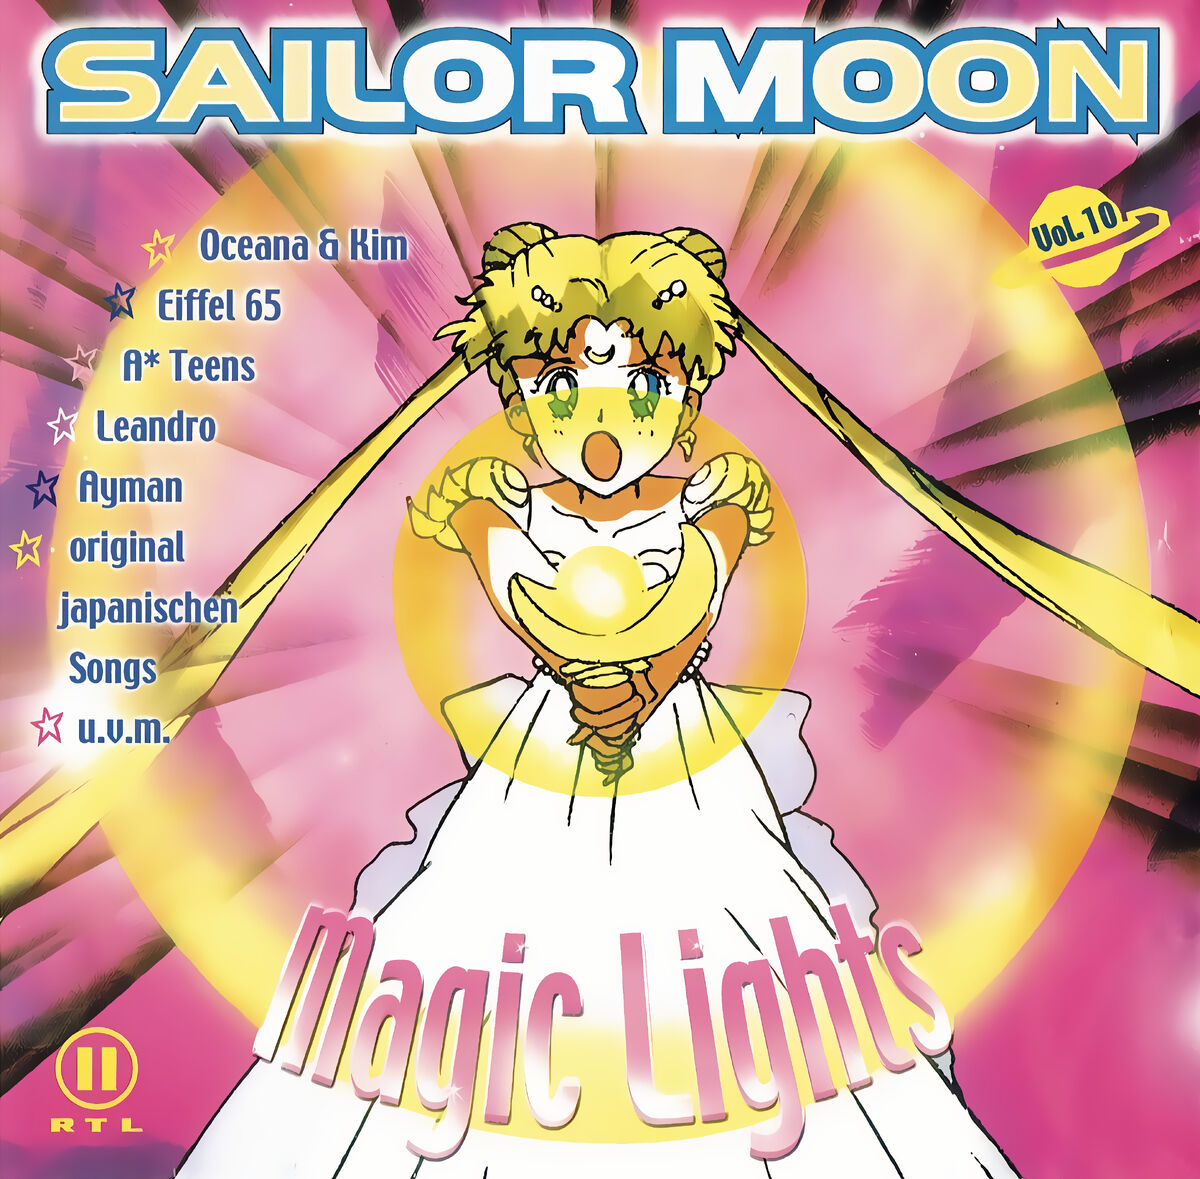 Exploring Sailor Moon's most magical soundtracks